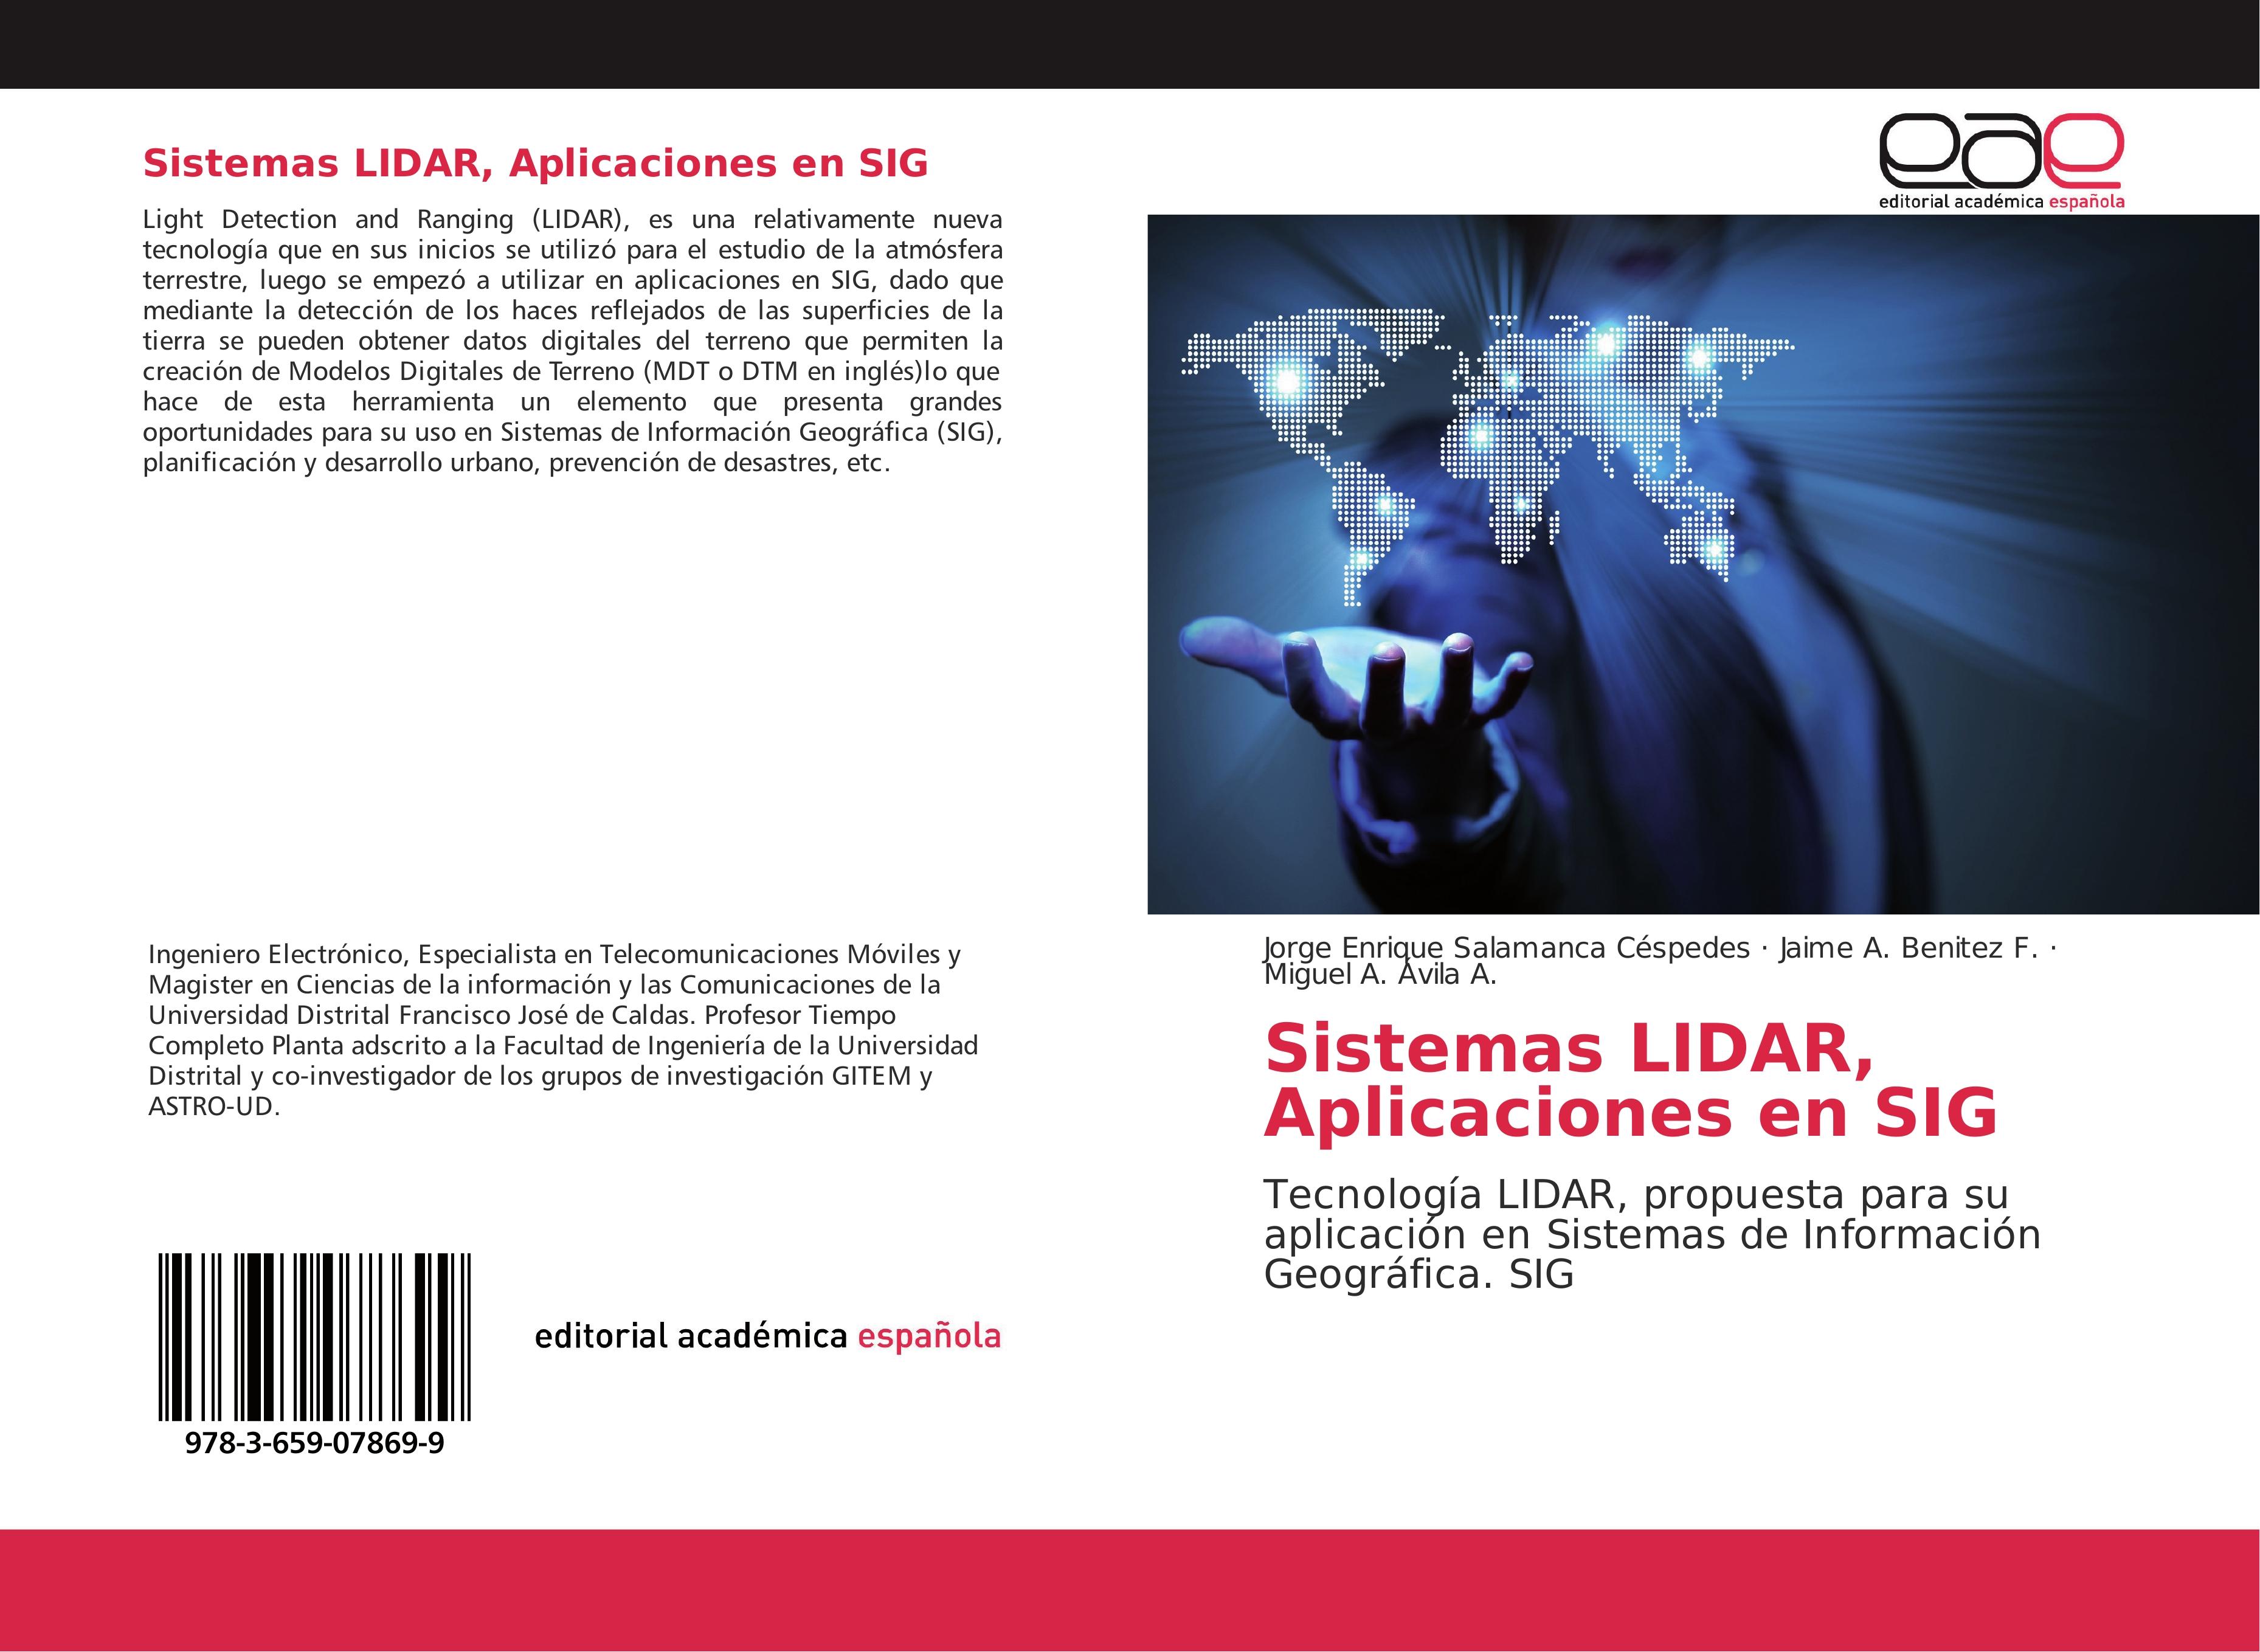 Sistemas LIDAR, Aplicaciones en SIG - Jorge Enrique Salamanca Céspedes Jaime A. Benítez F. Miguel A. Avila A.